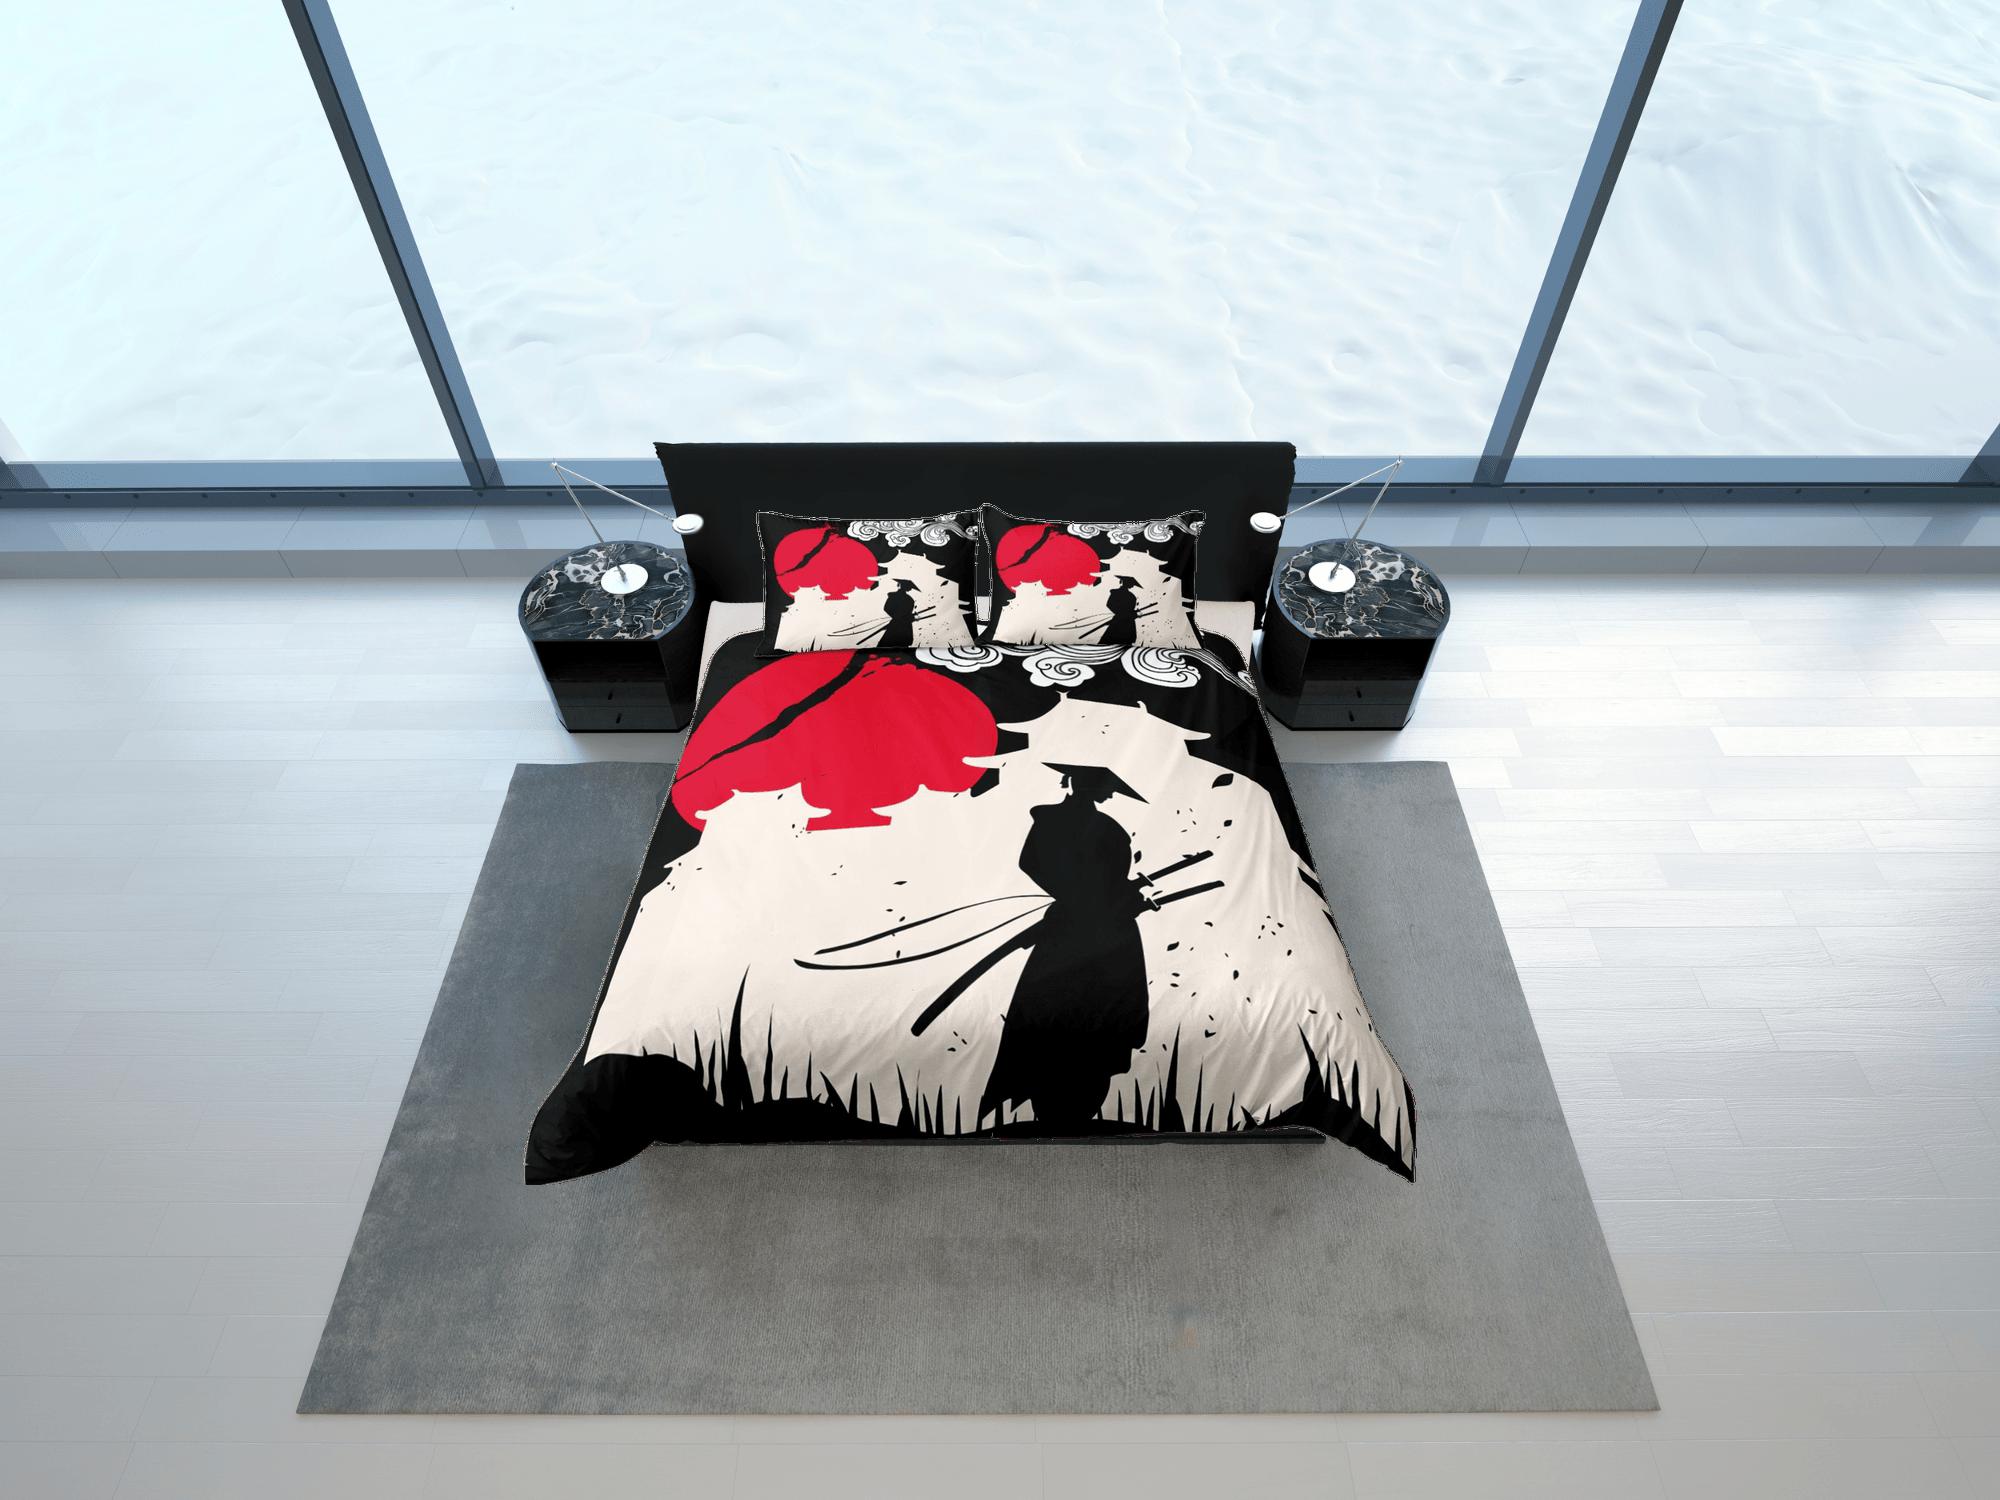 daintyduvet Samurai bedding, japanese duvet cover set for king, queen, full, twin, single, bed, bedding for boys, anime lover gift, japan culture